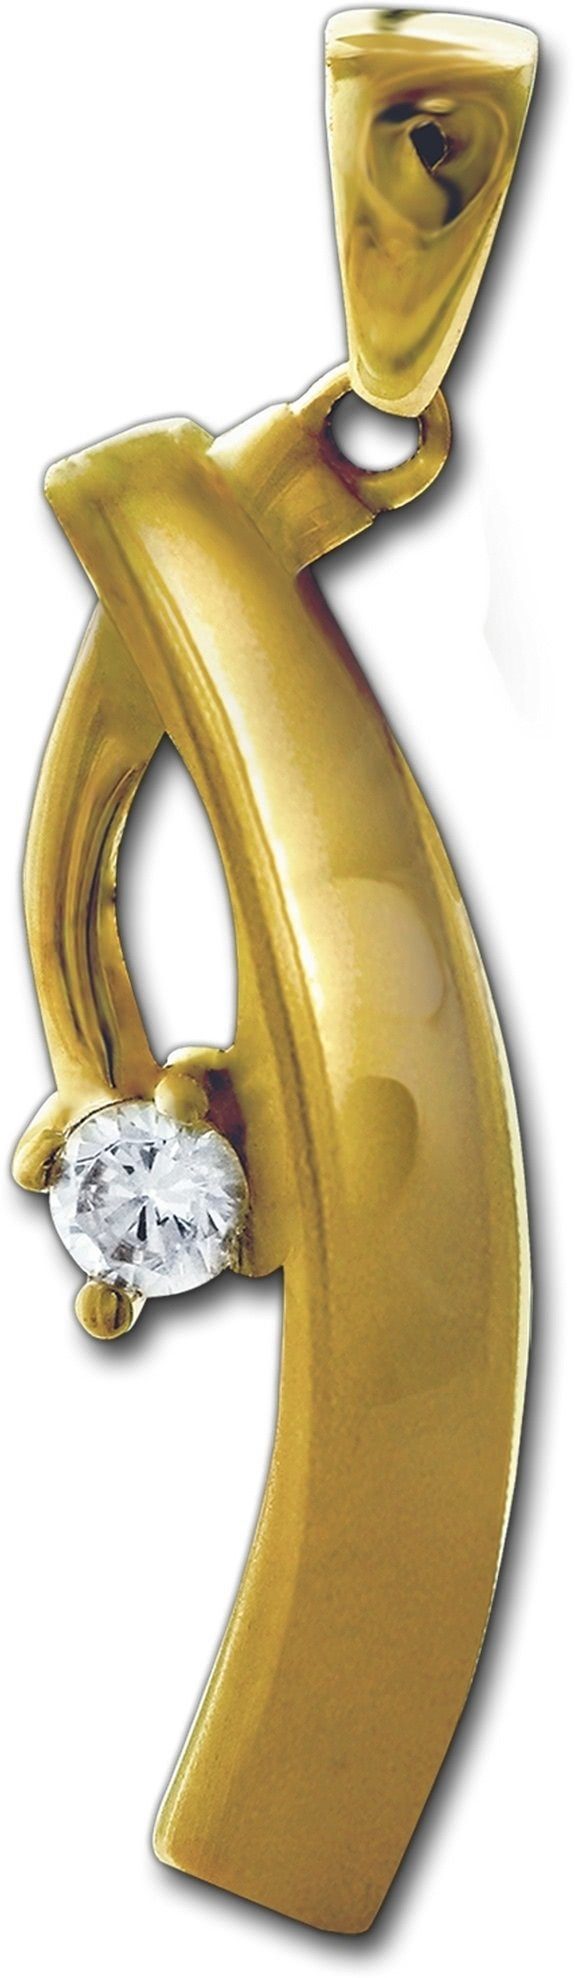 GoldDream Elegance Karat Kettenanhänger Kettenanhänger (Elegance) GoldDream 8K, - 29mm, 333 8 Kettenanhänger Gelbgold ca.